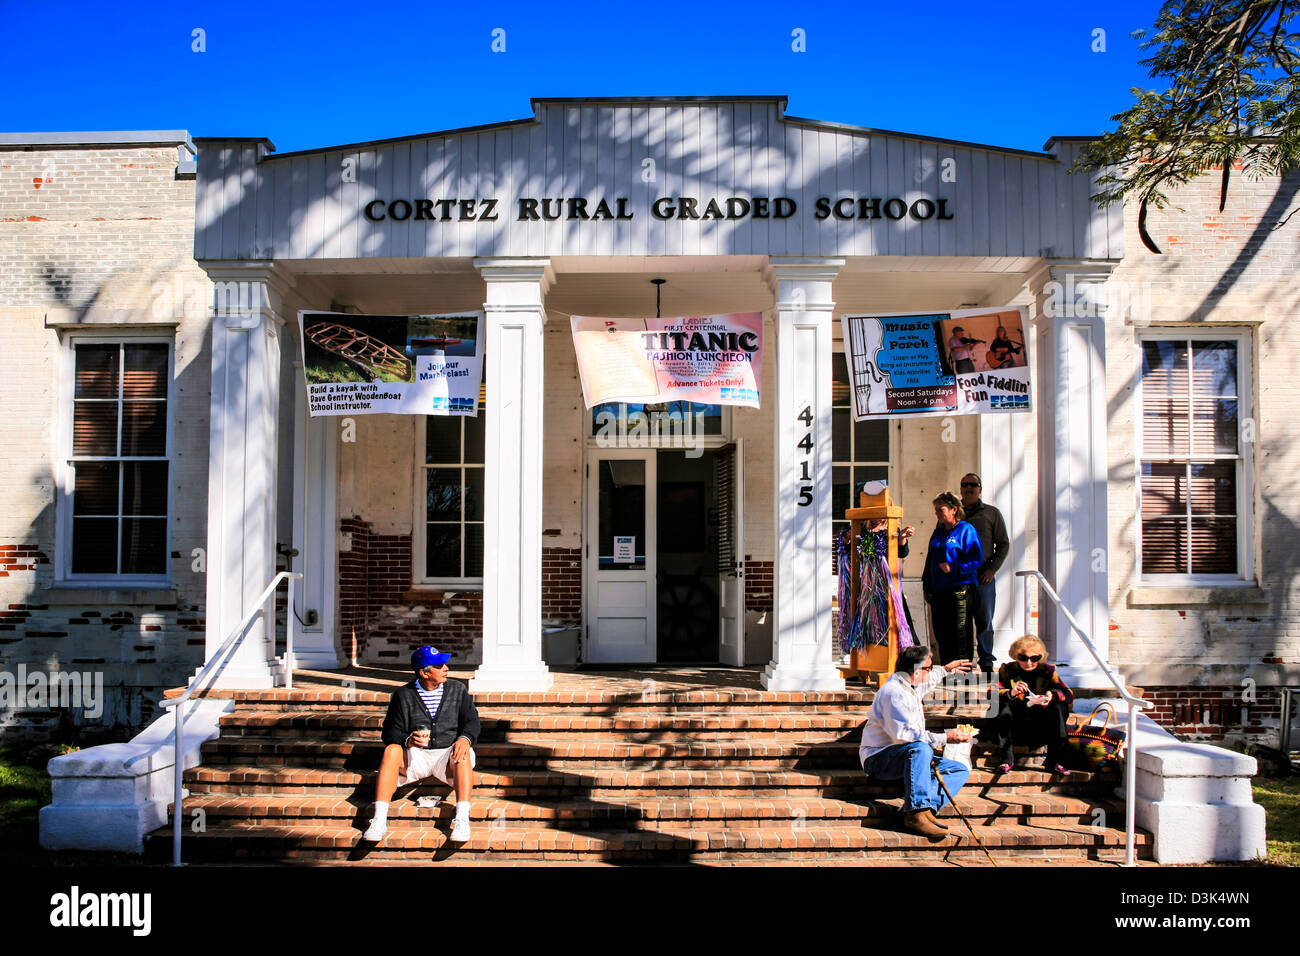 El Cortez Rural edificio de la Escuela Graduada de la Florida, ahora las ciudades museo. Foto de stock